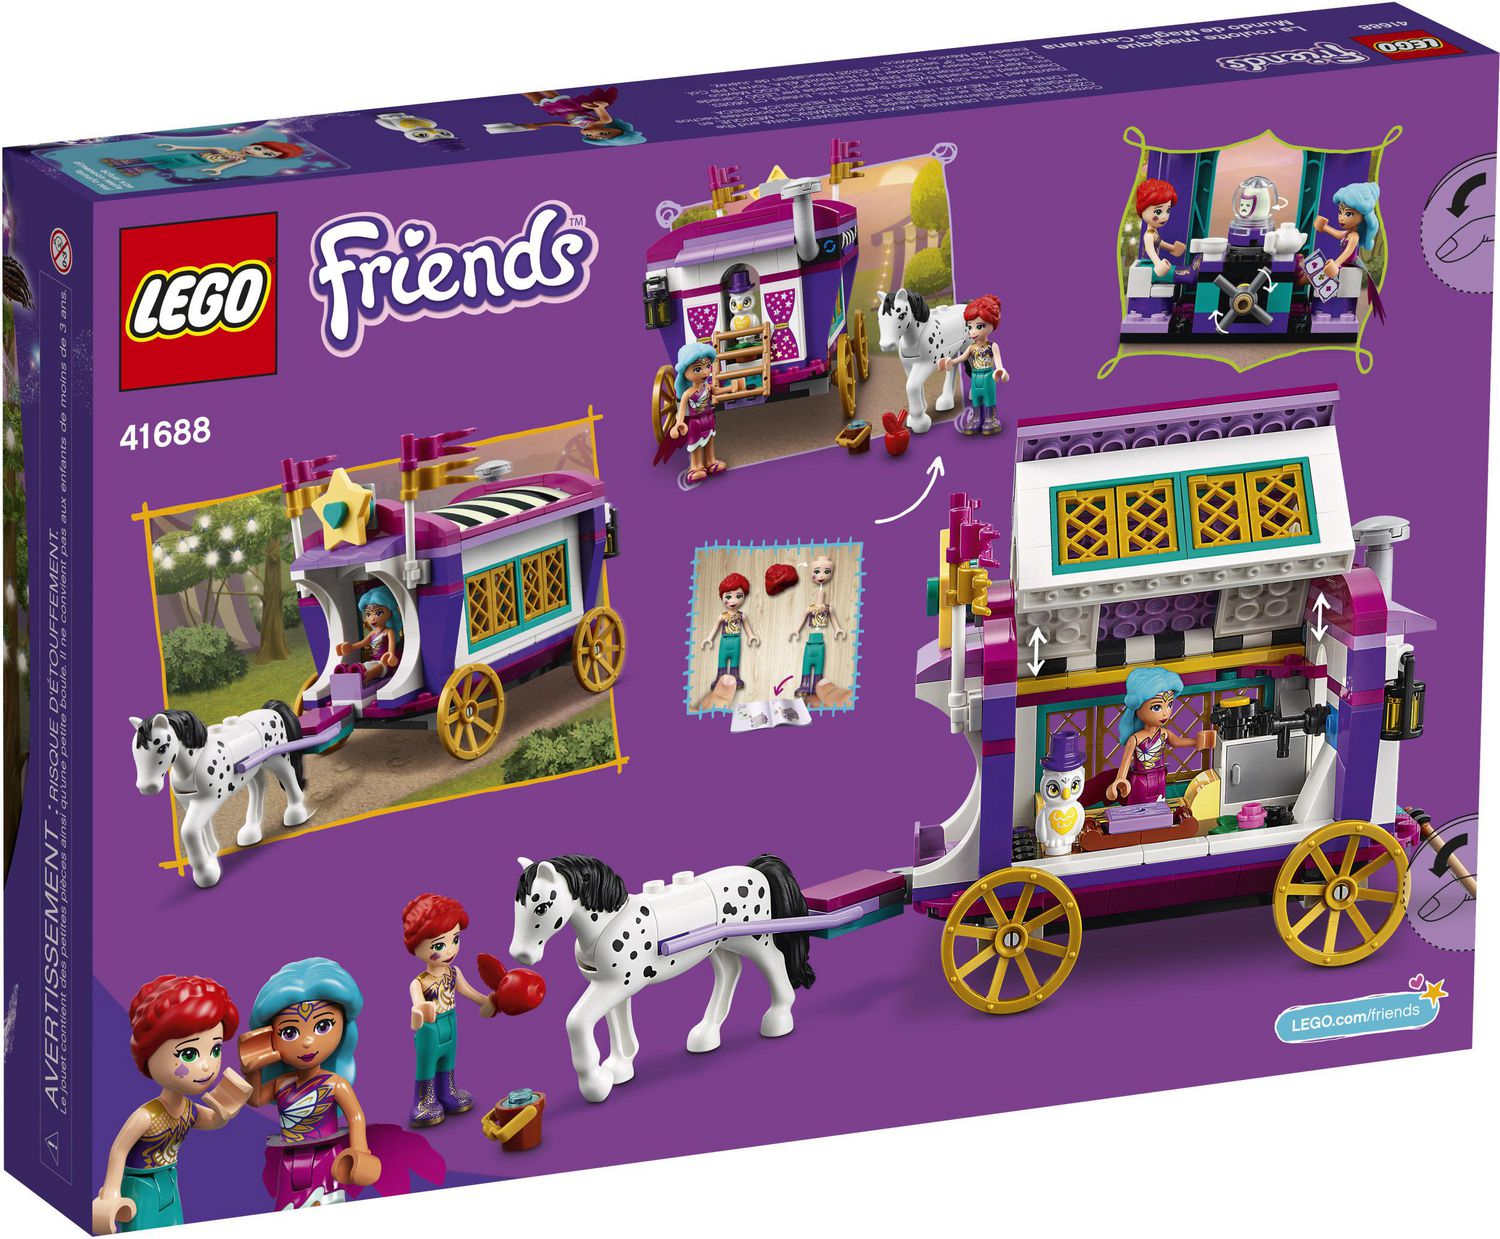 LEGO Friends Magical Caravan 41688 Toy Building Kit (348 Pieces